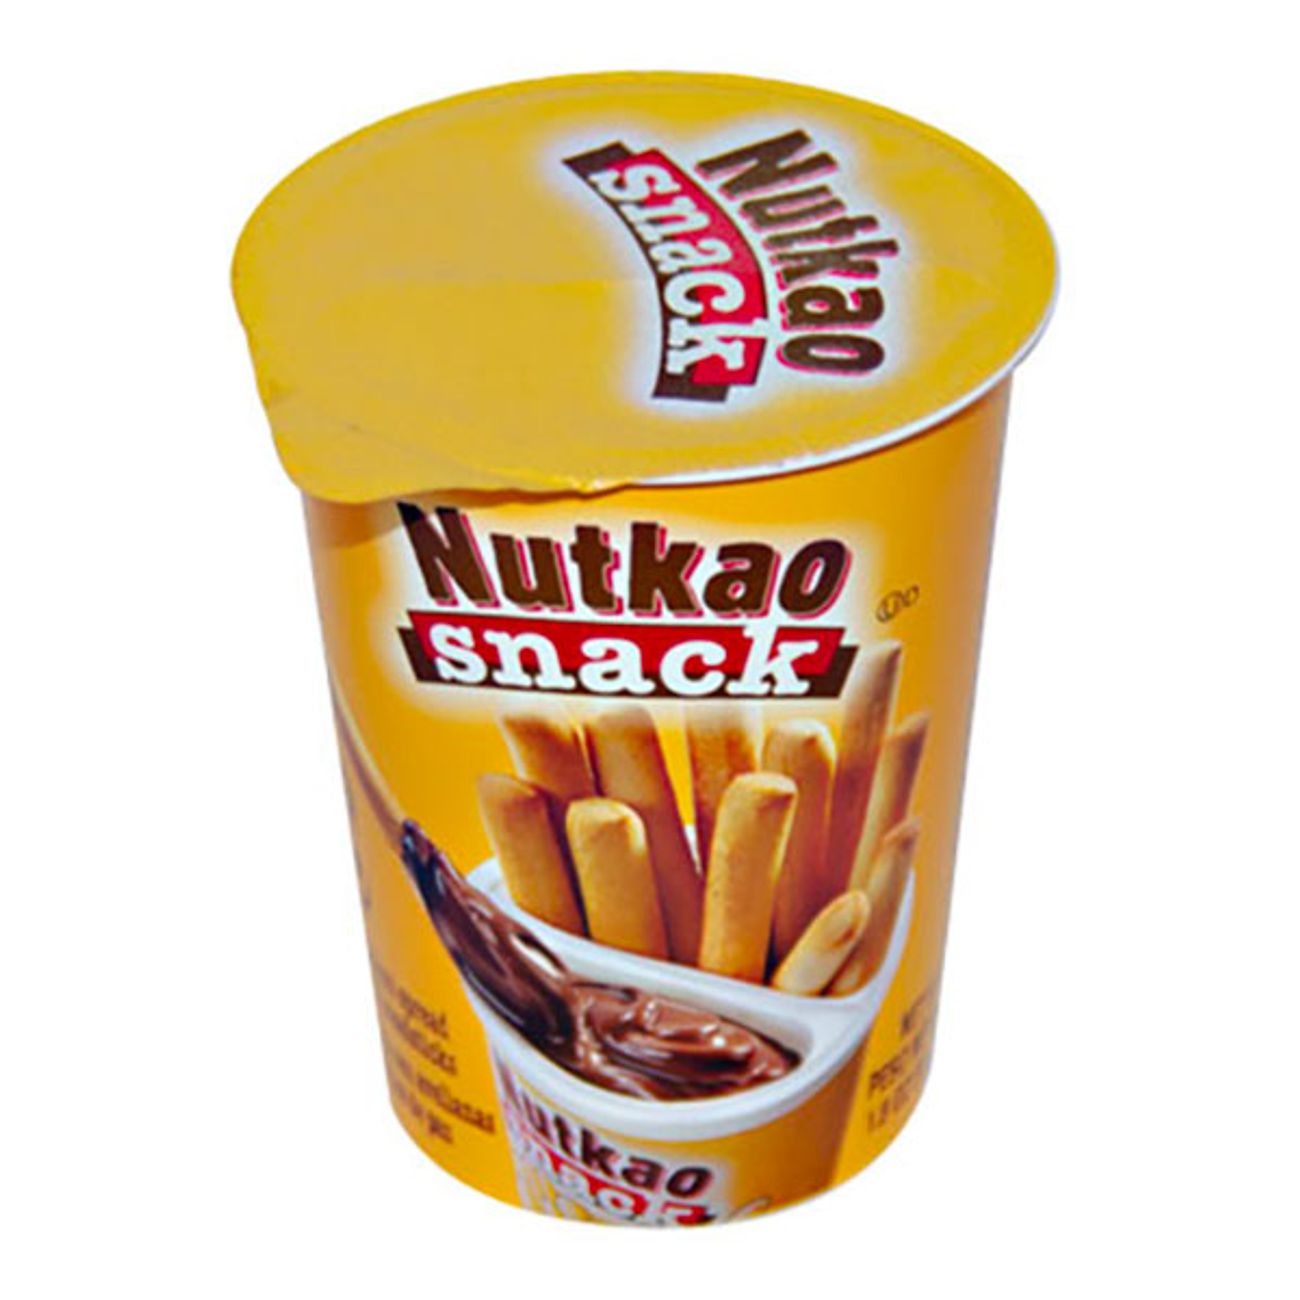 nutkao-snack-1